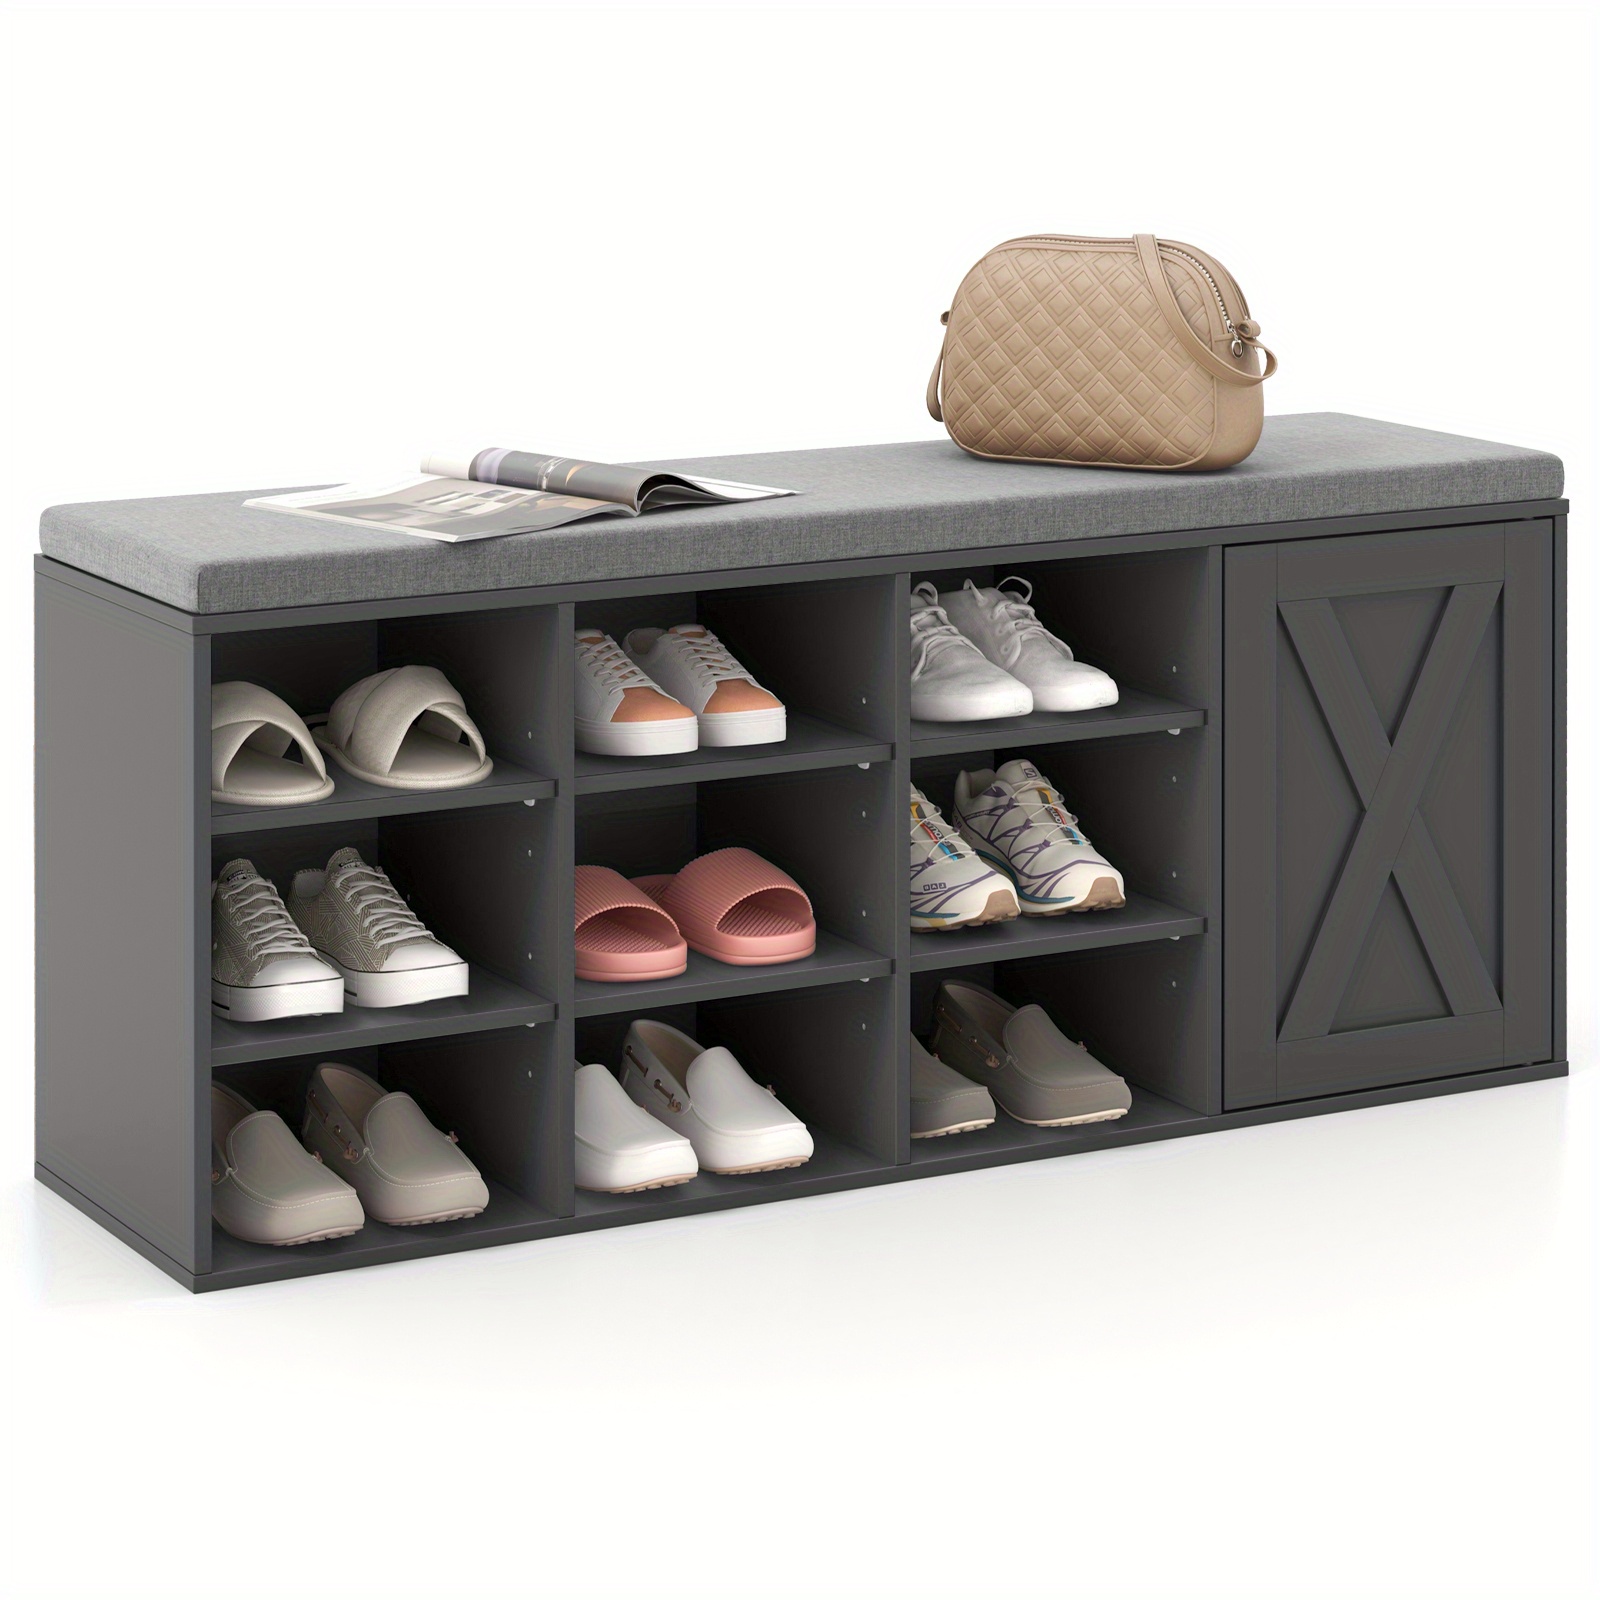 

Lifezeal Shoe Bench W/padded Cushion 9-cube Adjustable Storage Shoe Rack Grey